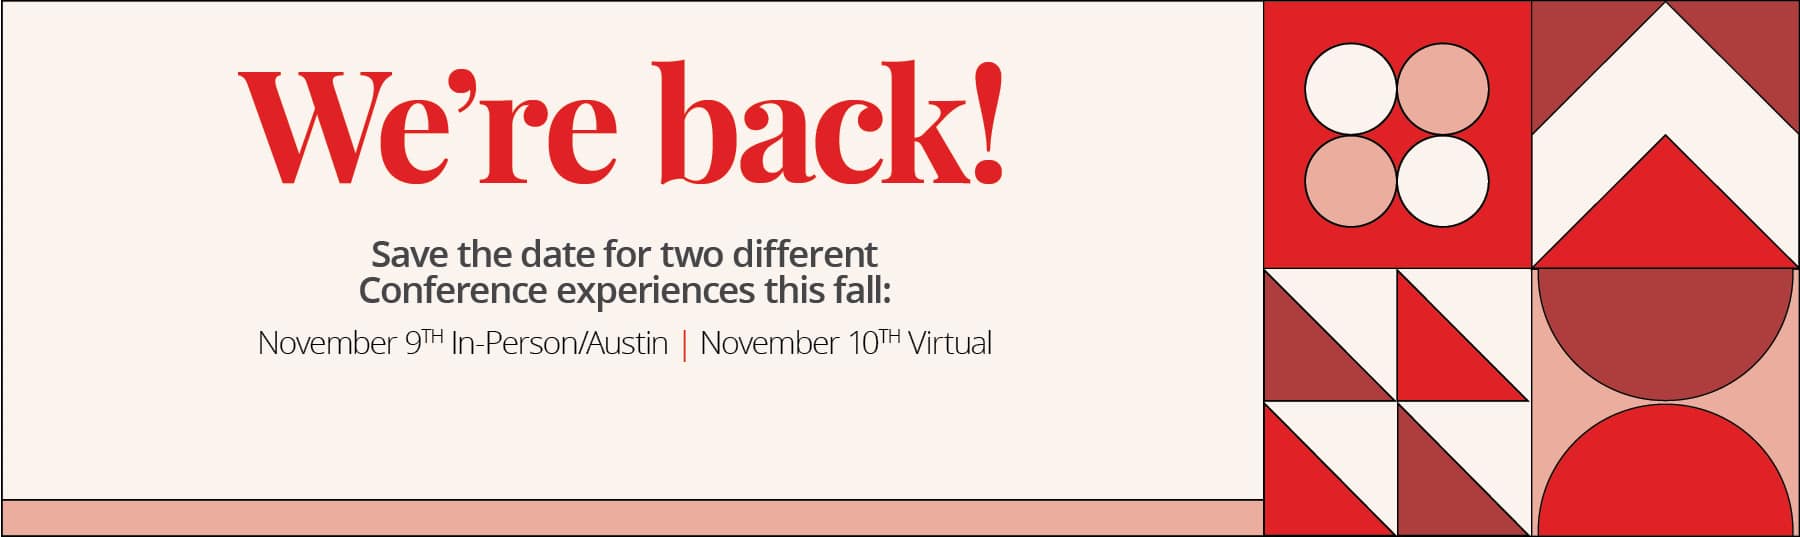 We're back! Join us in Austin Nov. 9, or online Nov. 10